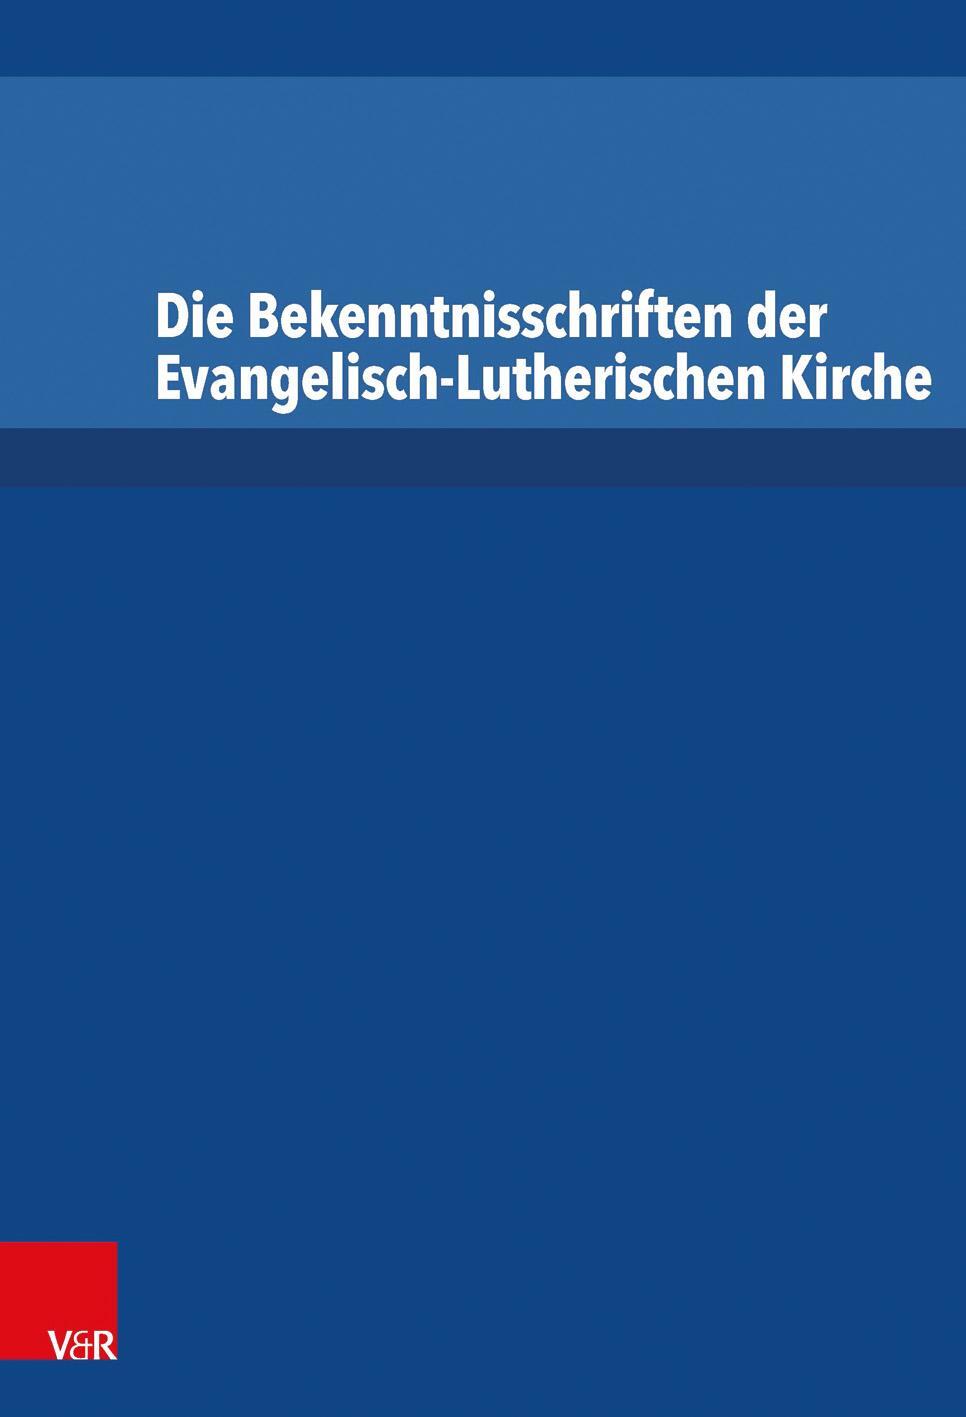 Die Bekenntnisschriften der Evangelisch-Lutherischen Kirche - Dingel, Irene